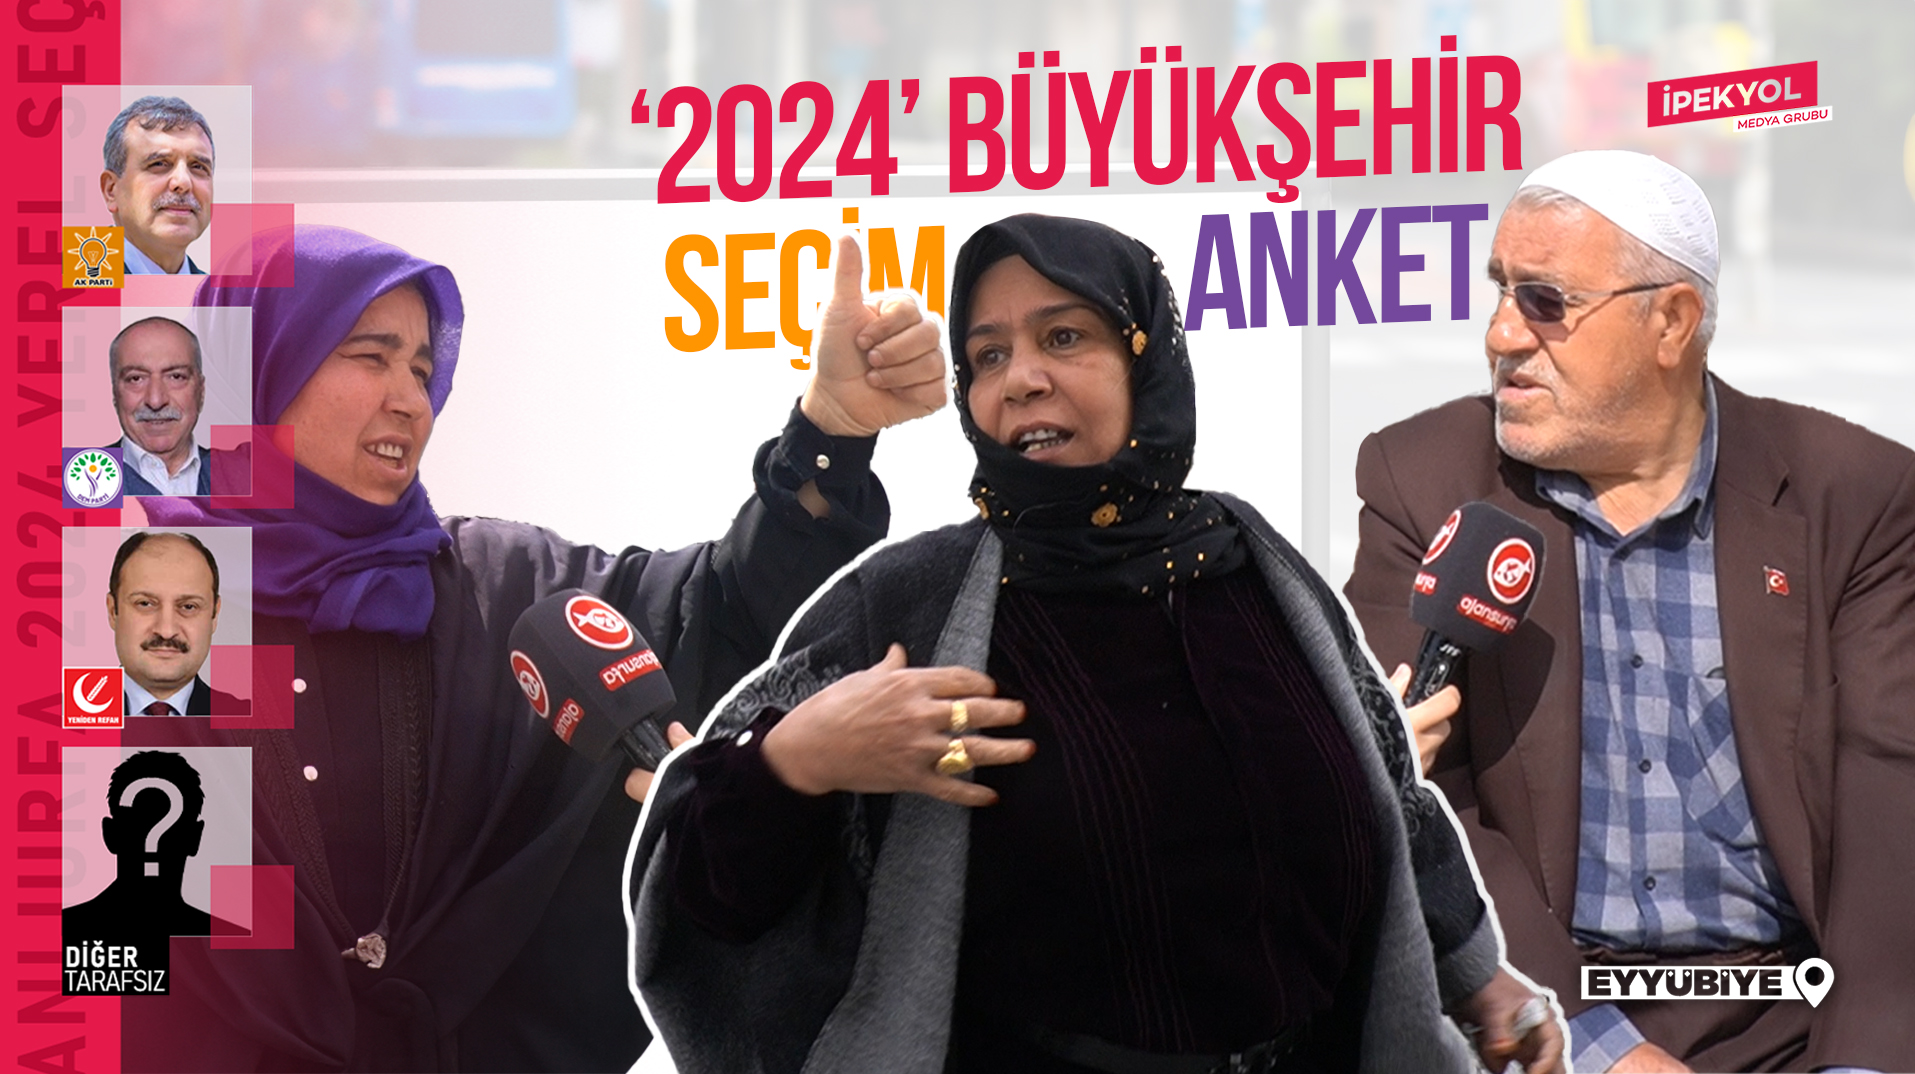 Şanlıurfa 'Eyyübiye' sayaçlı seçim anketi 2024! Büyükşehir'de hangi aday önde?